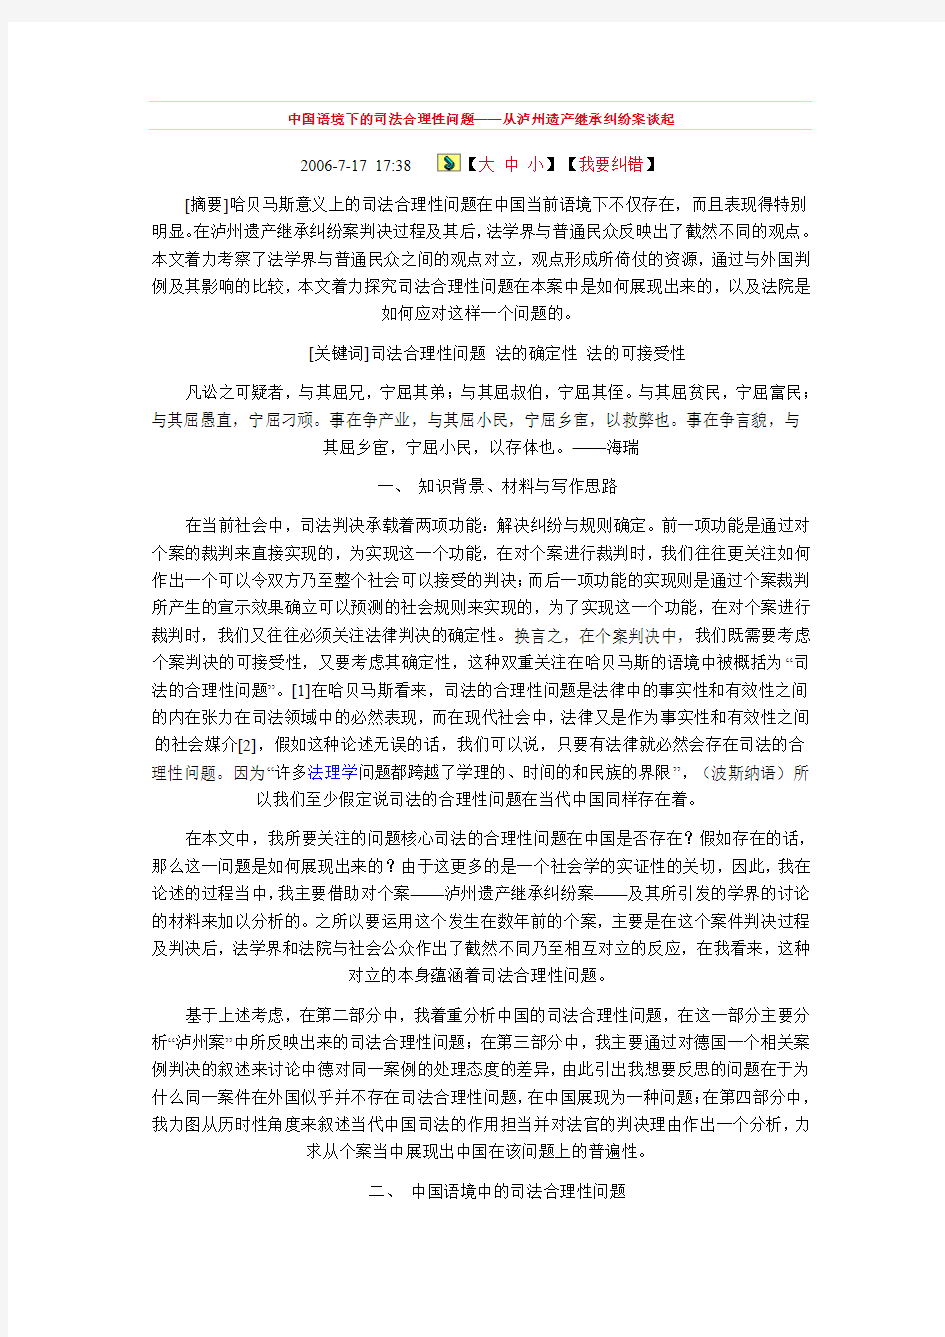 中国语境下的司法合理性问题——从泸州遗产继承纠纷案谈起